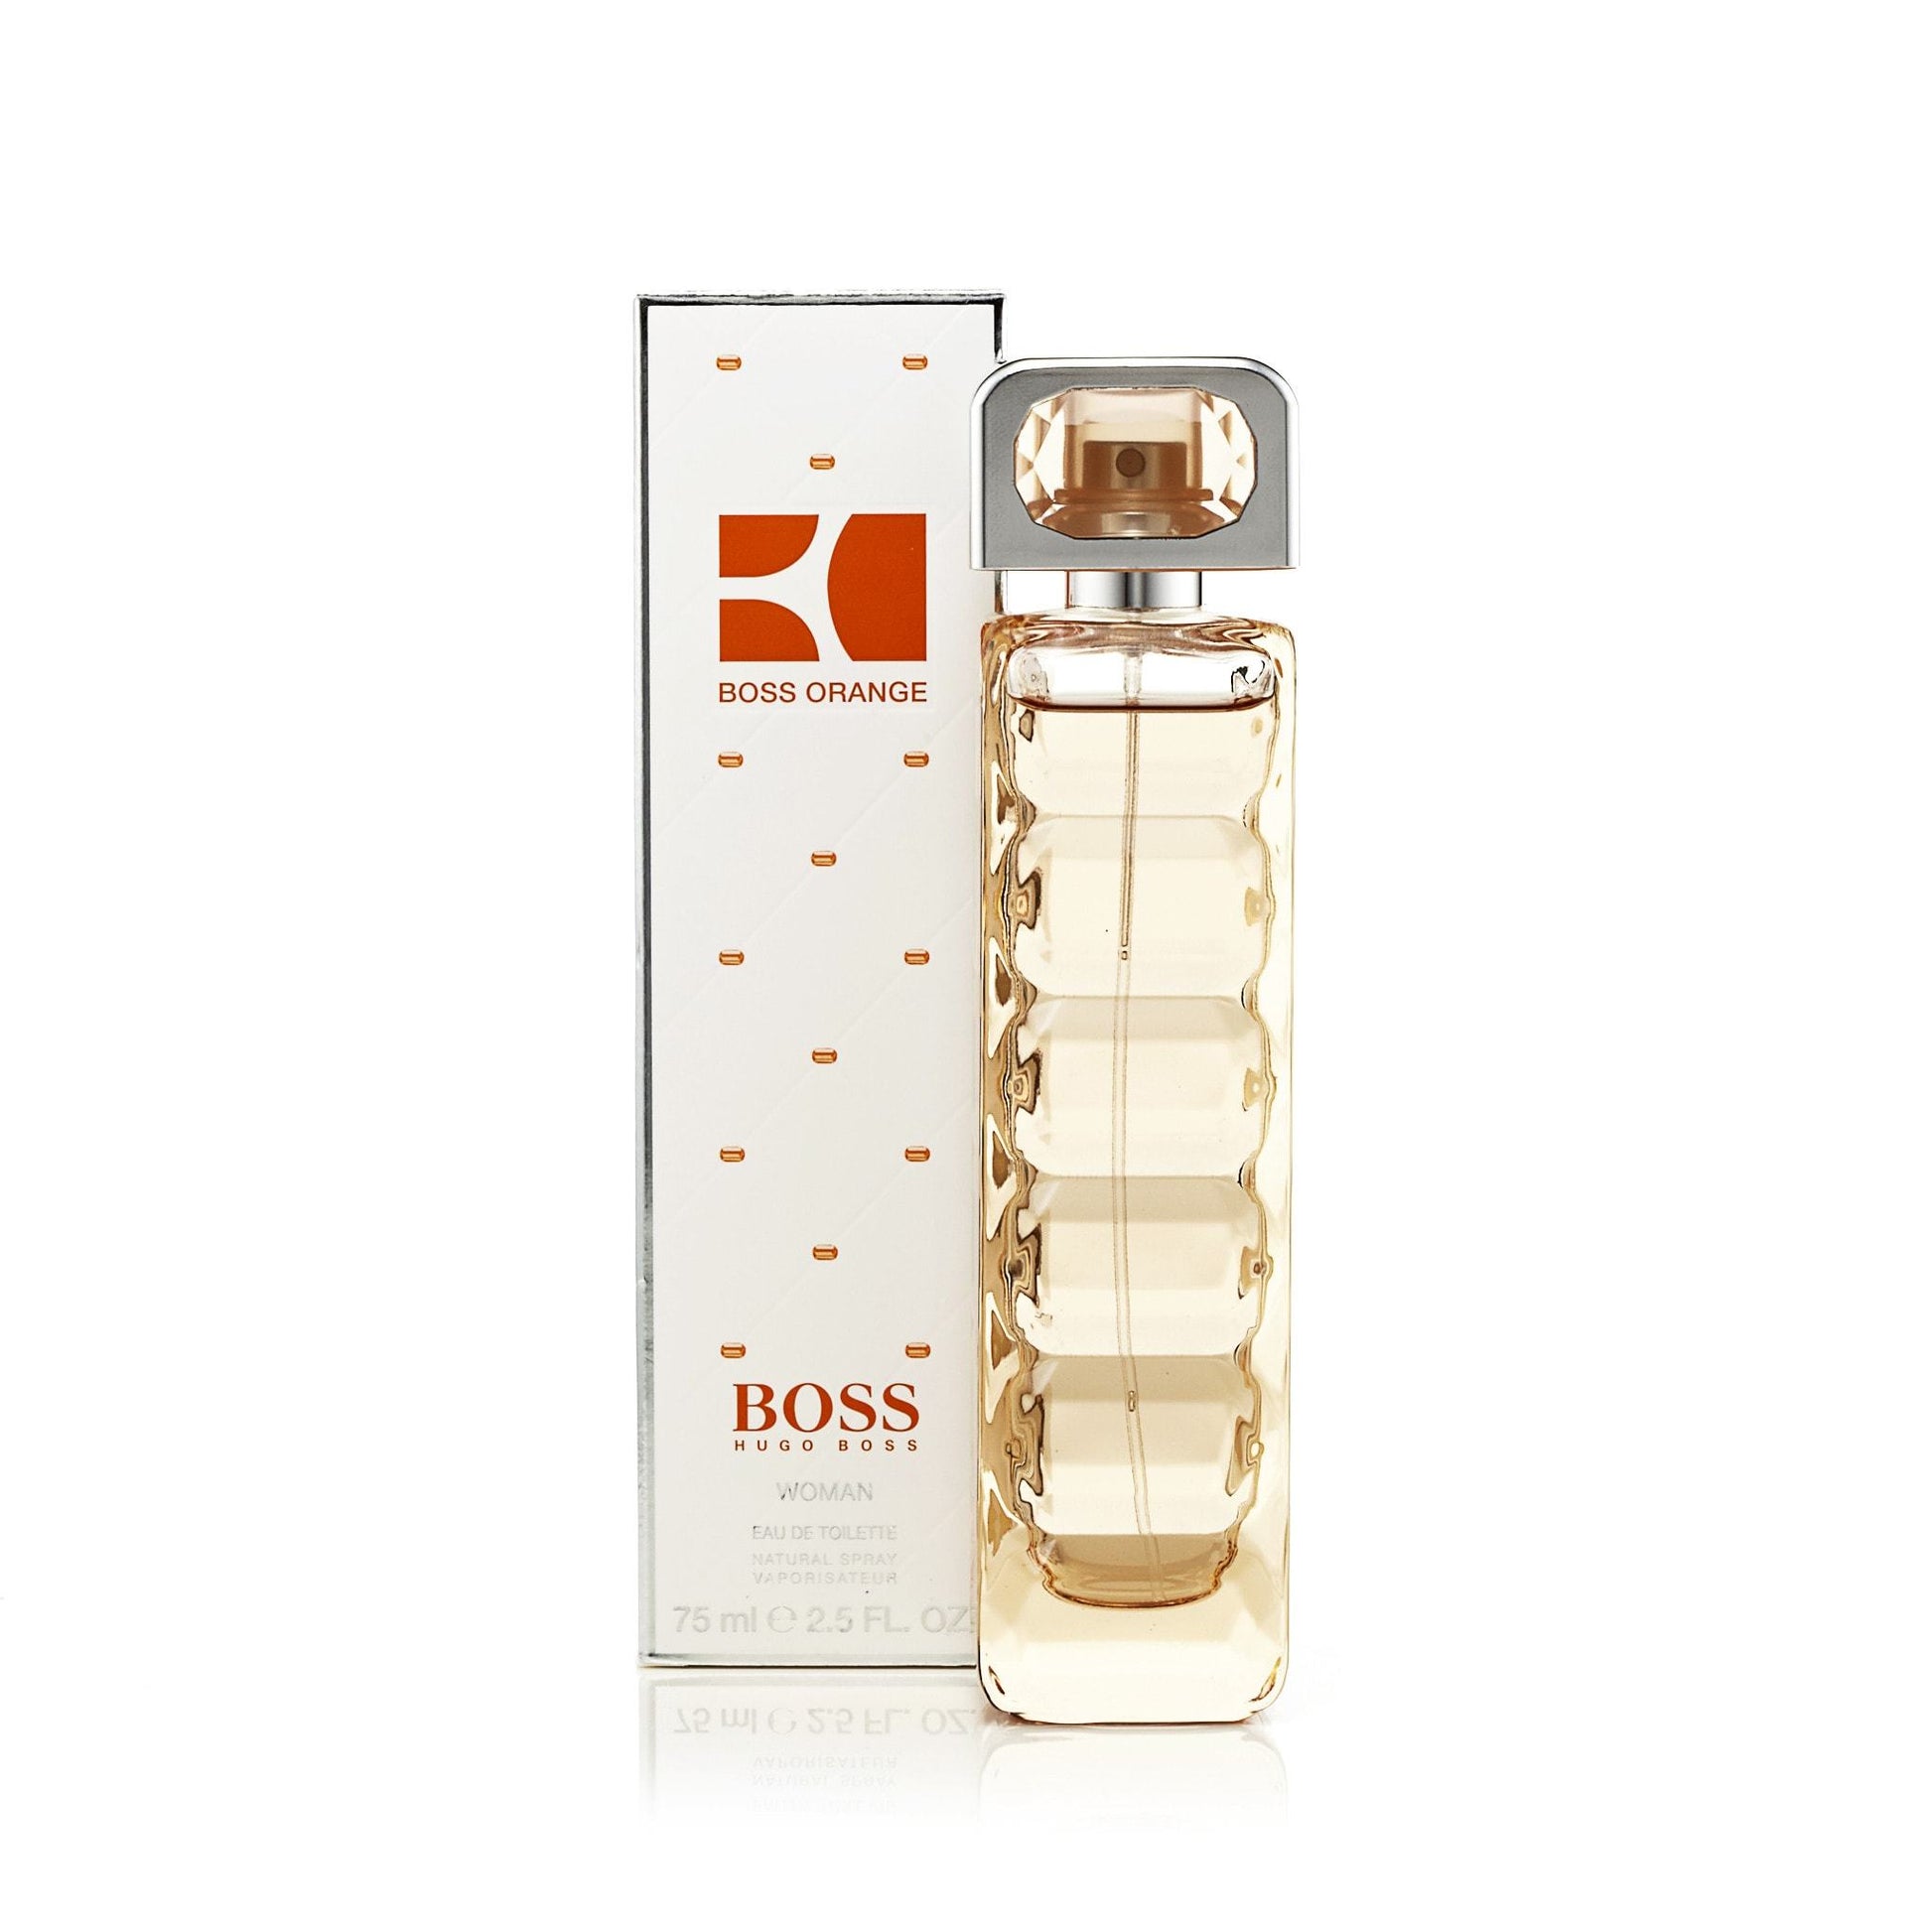 Boss Orange Eau de Toilette Spray for Women by Hugo Boss, Product image 1